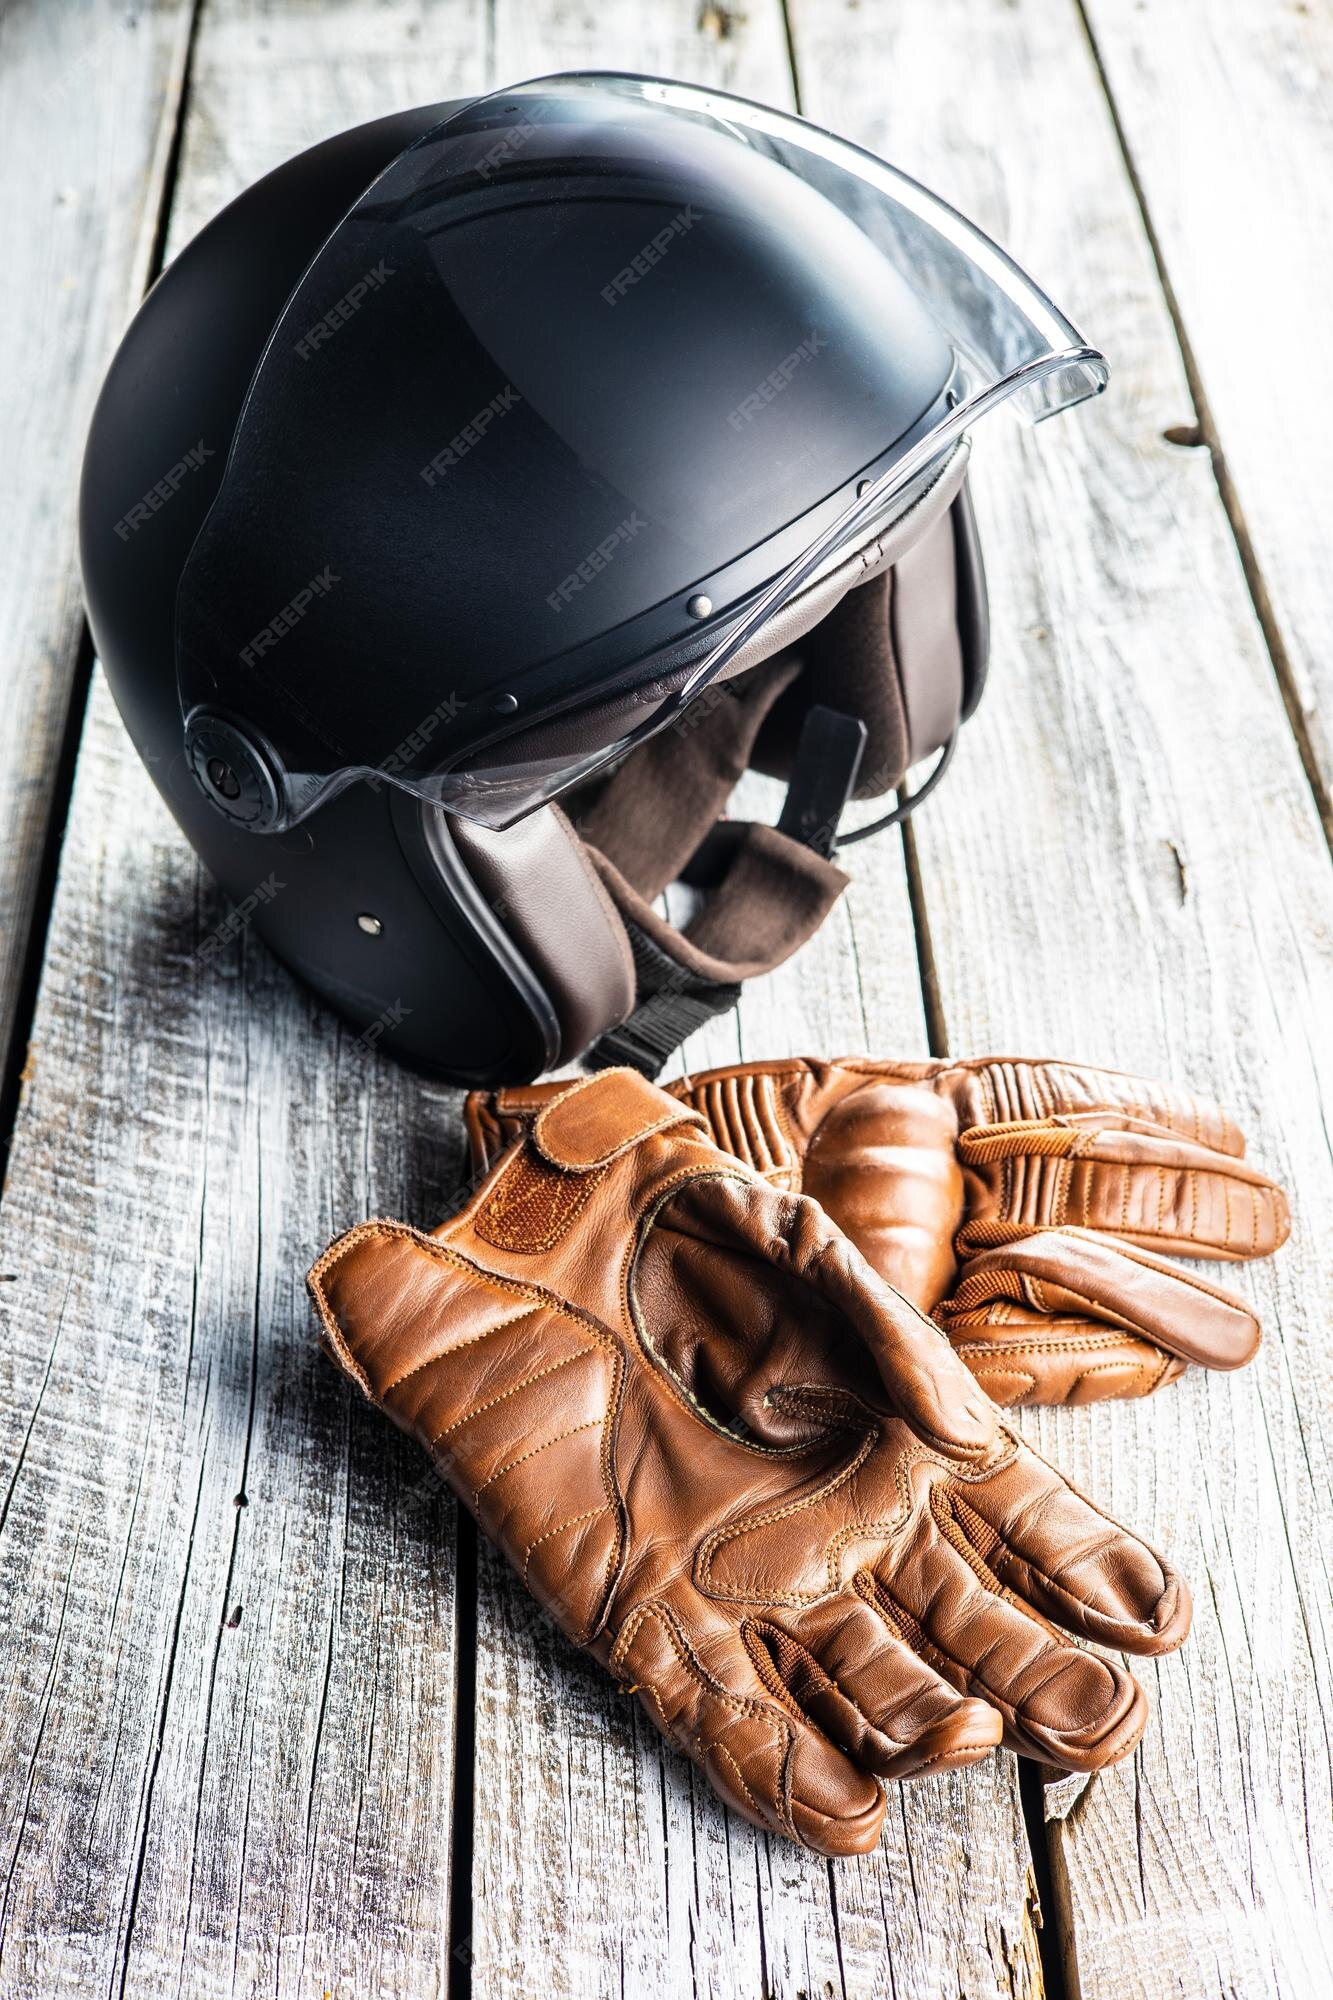 Accesorios de seguridad para moto guantes y piel Premium